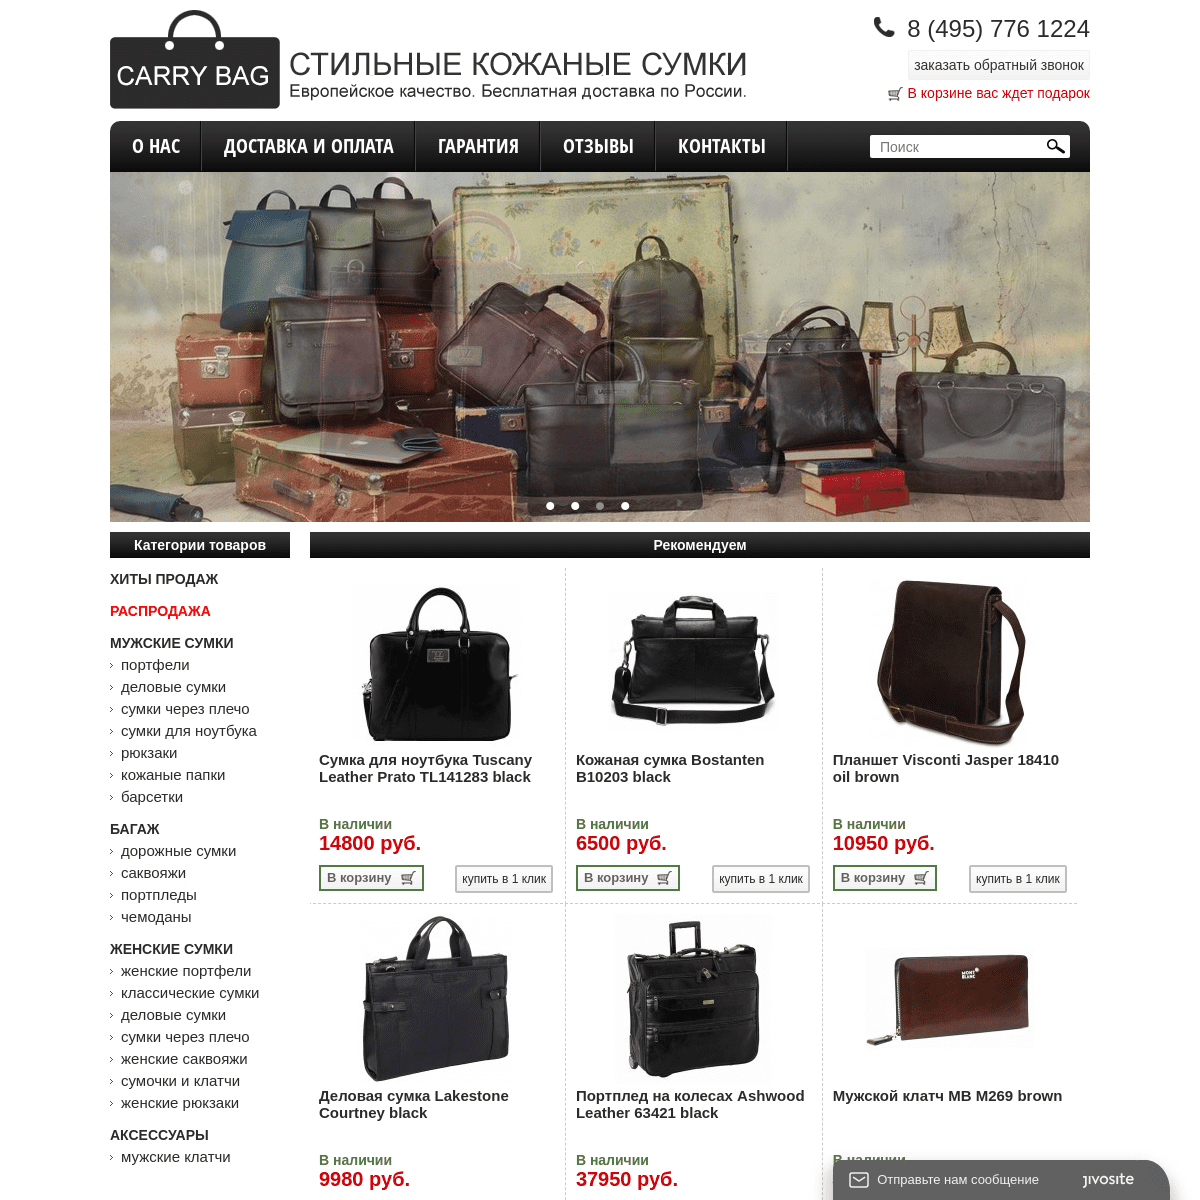 Кожаные сумки, портфели, дорожные сумки и саквояжи в интернет-магазине Carry Bag